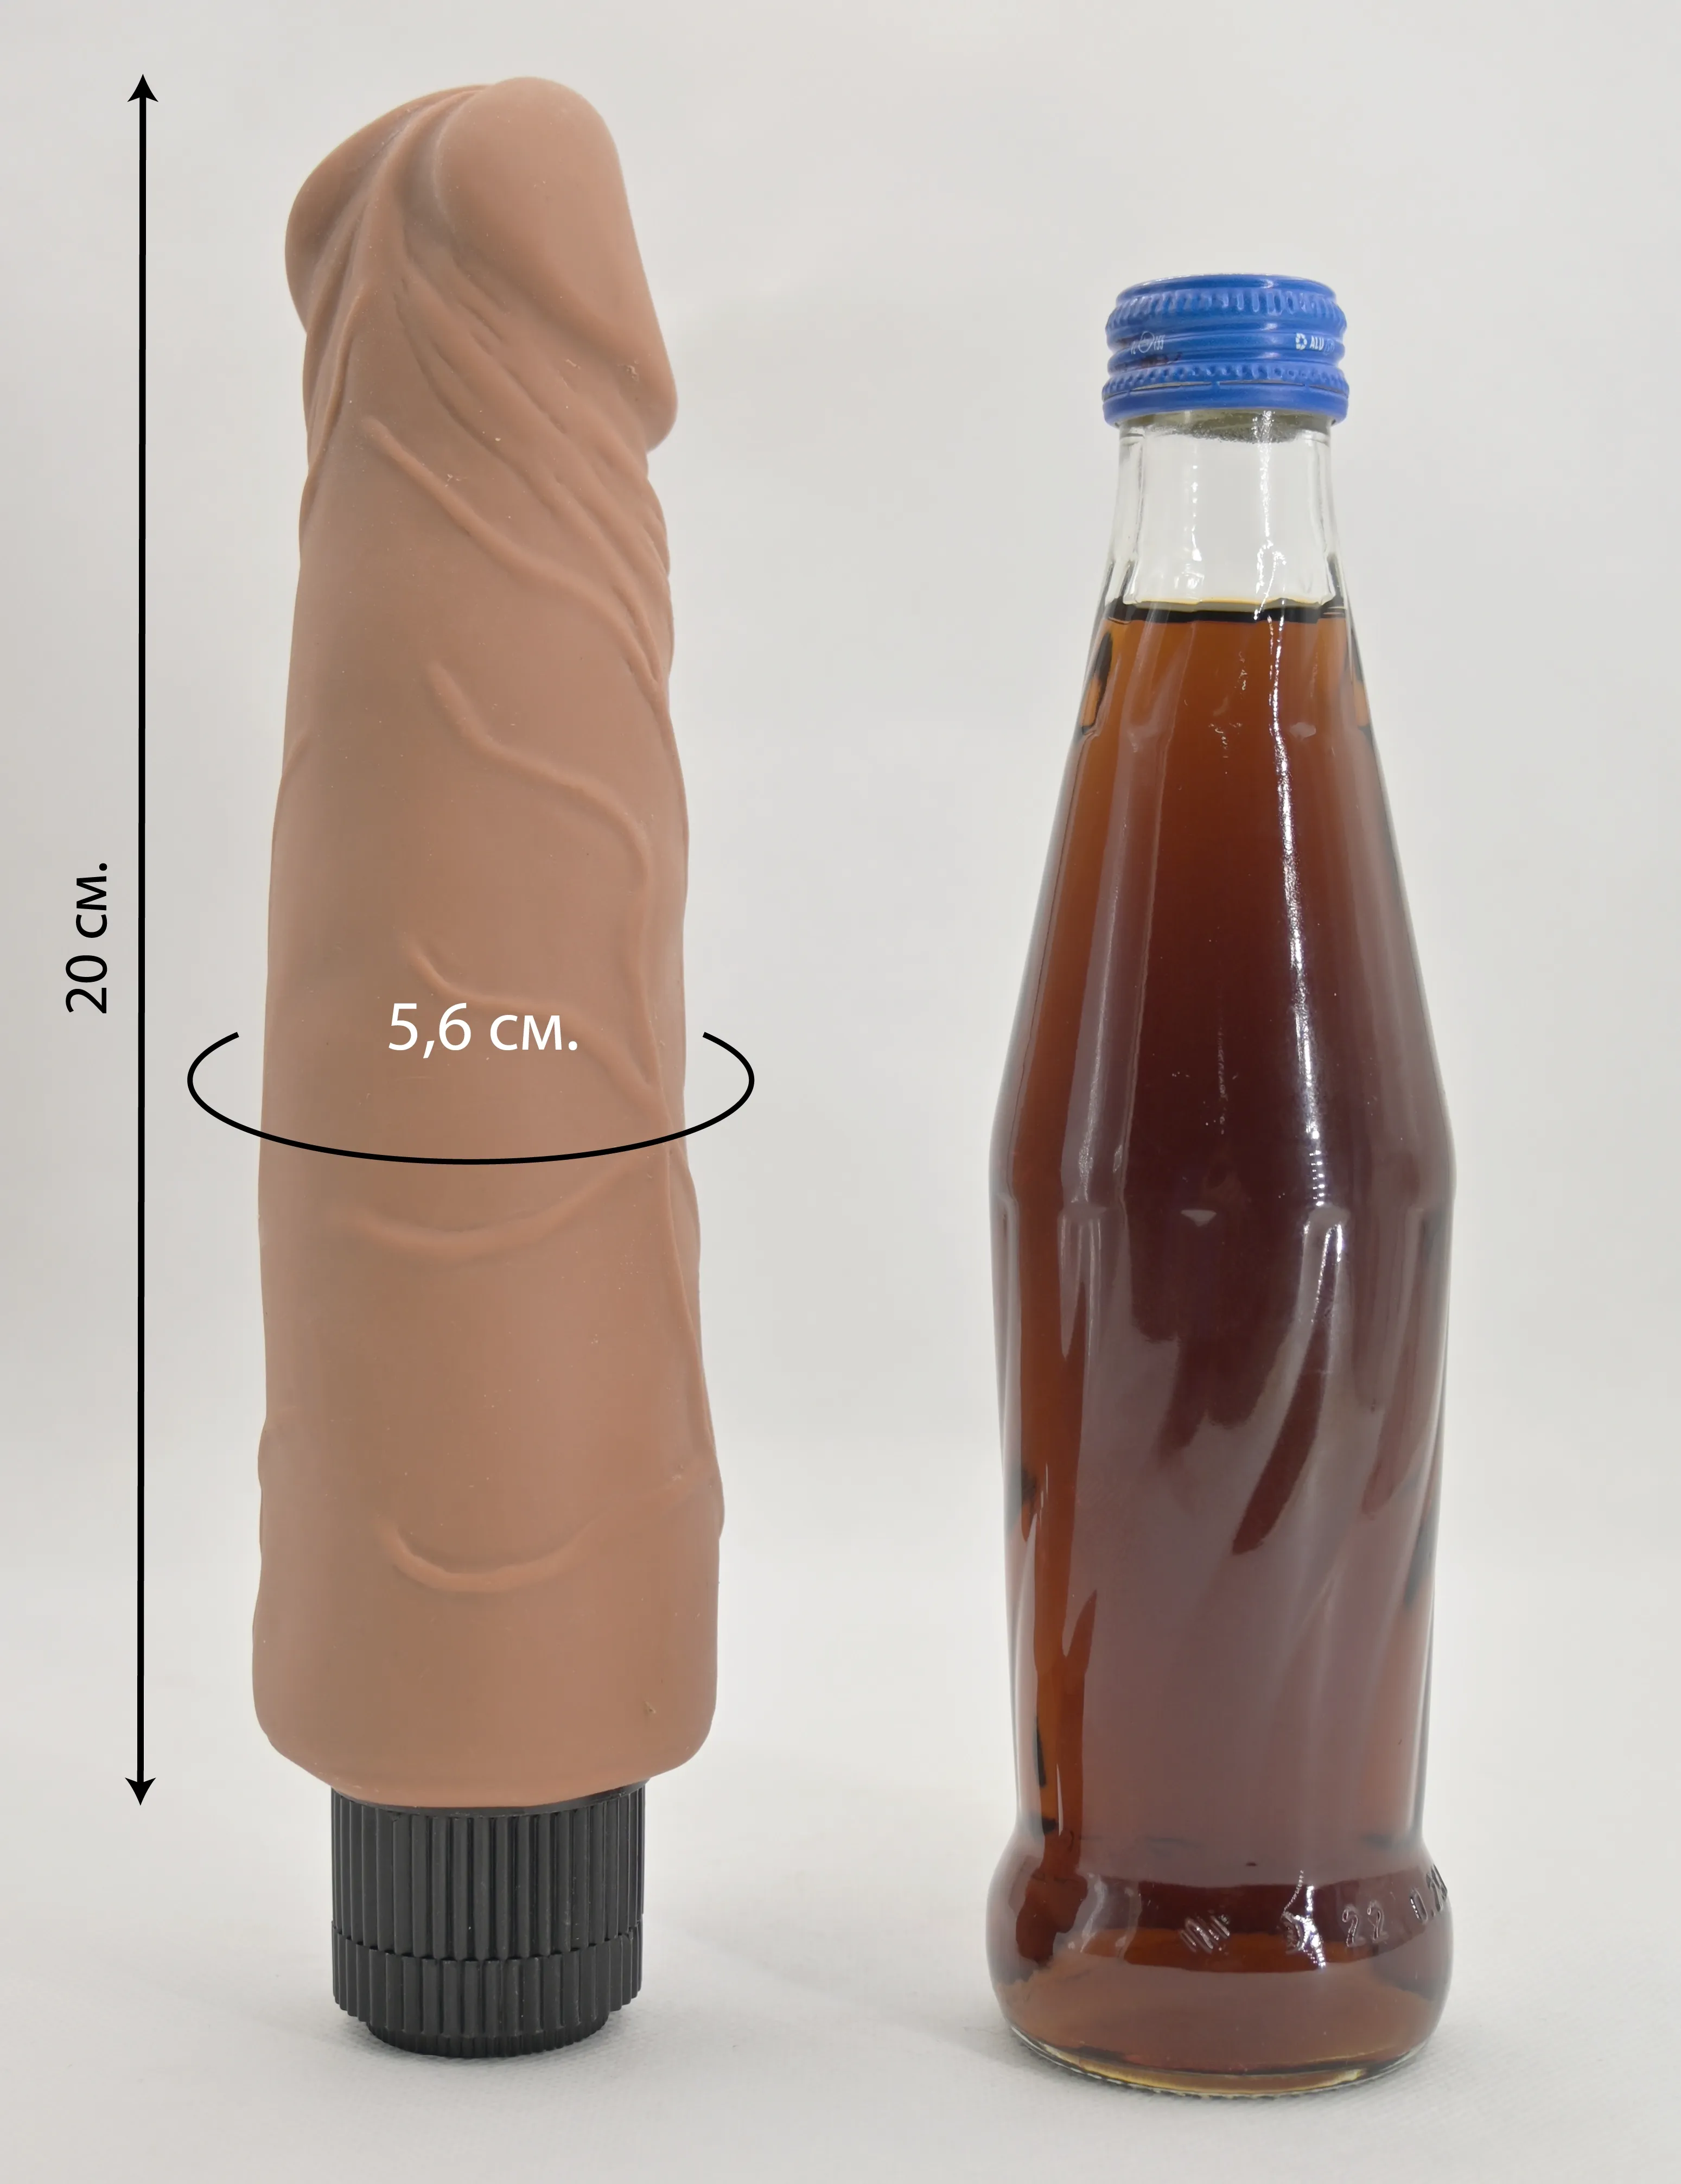 Размеры и сравнение вибратора Greedy Guy Latin со стеклянной бутылкой 0,33 л.